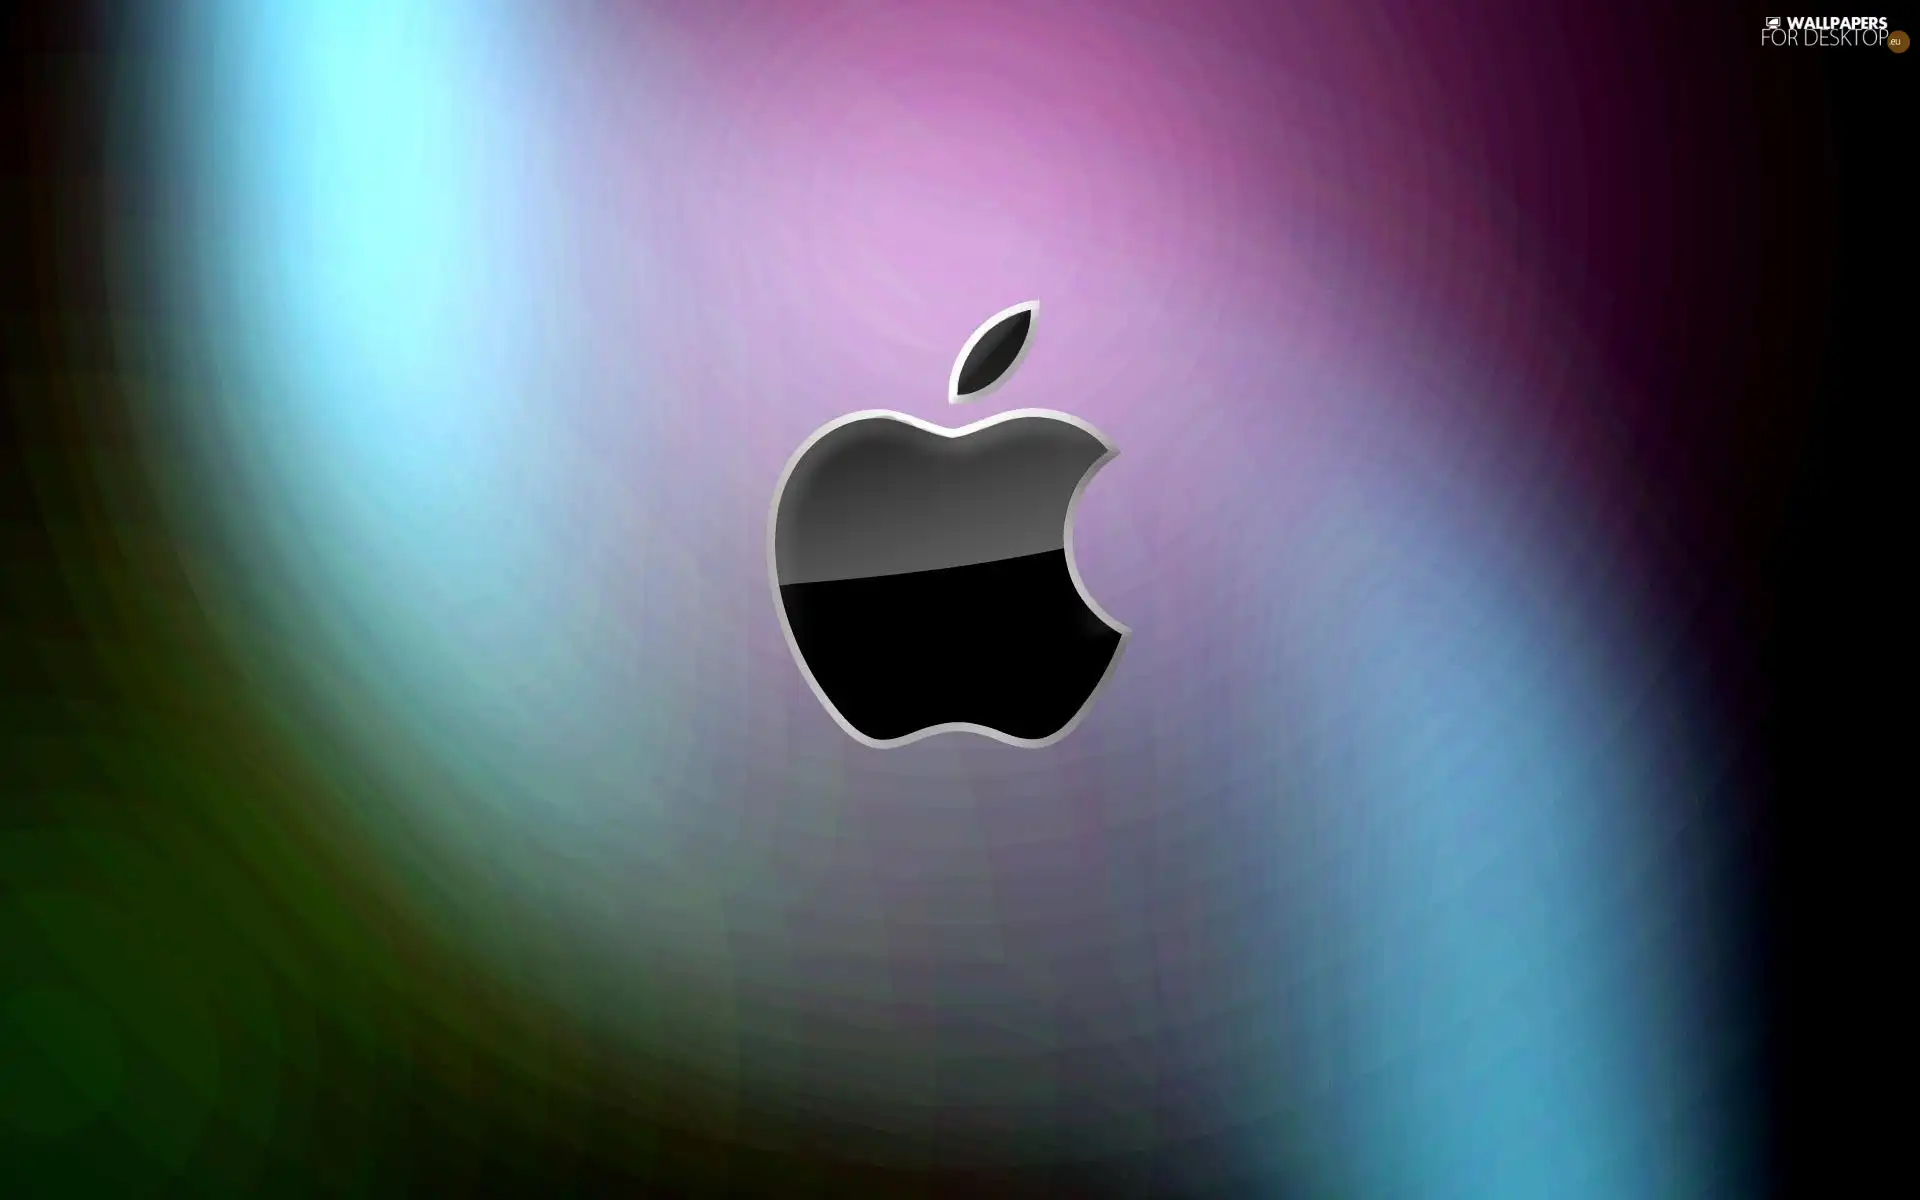 Black, color, background, Apple